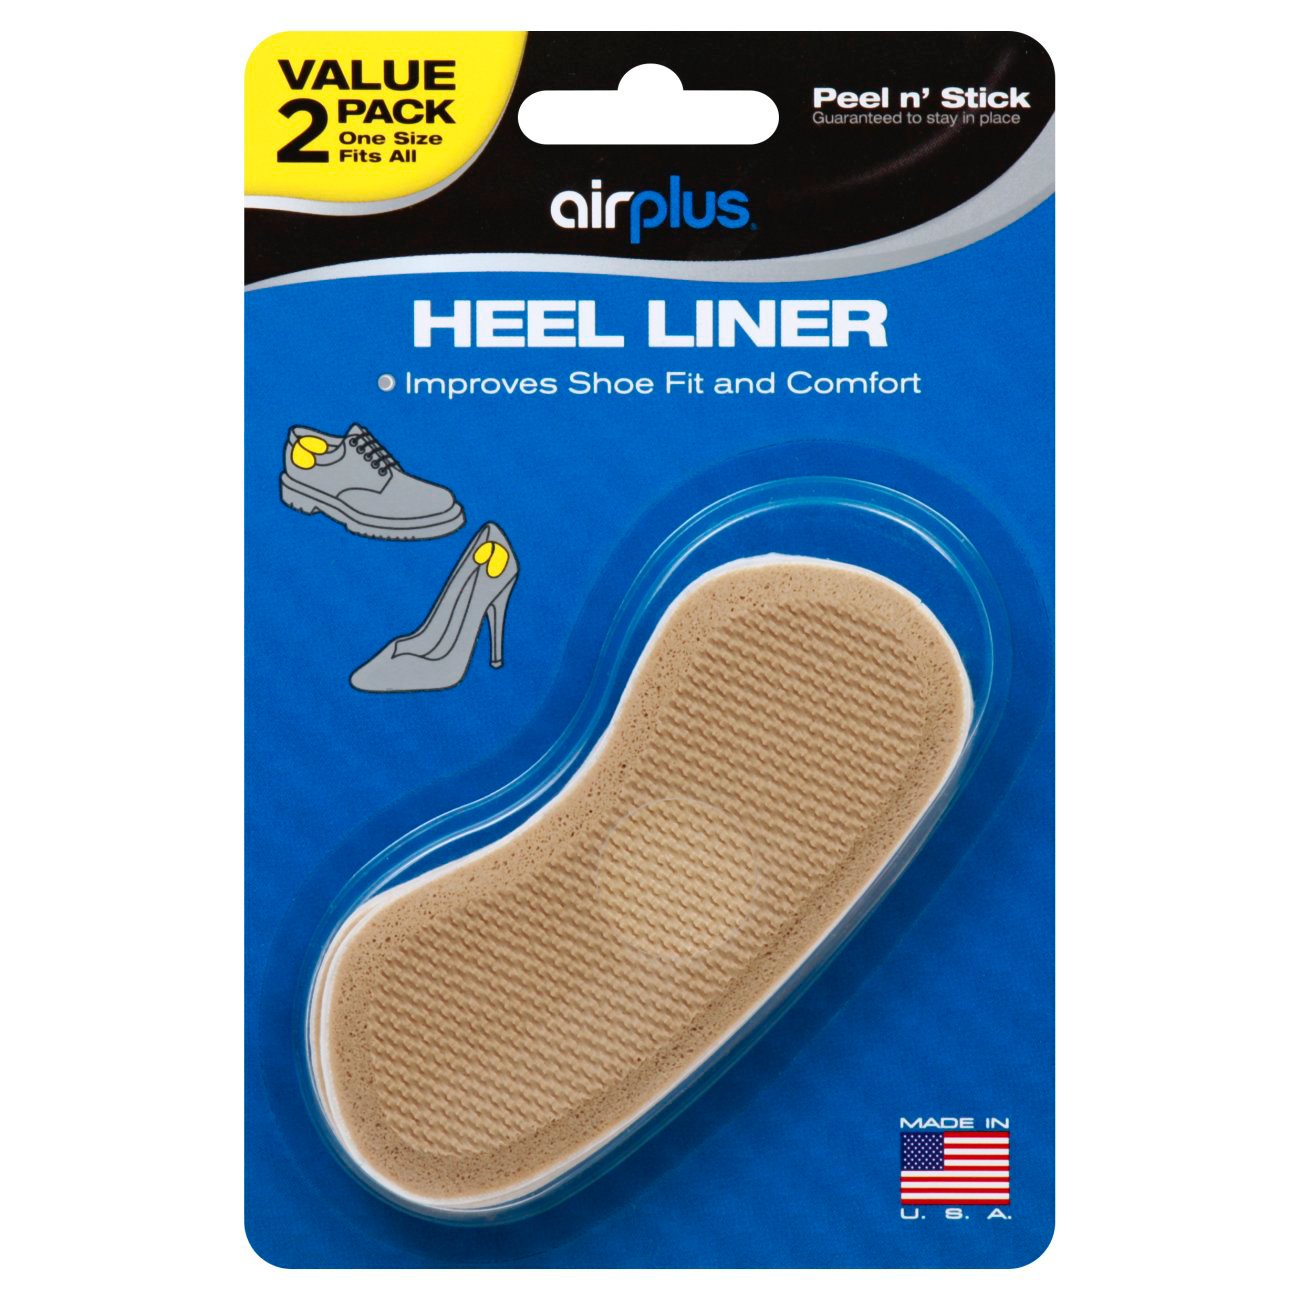 heel liners